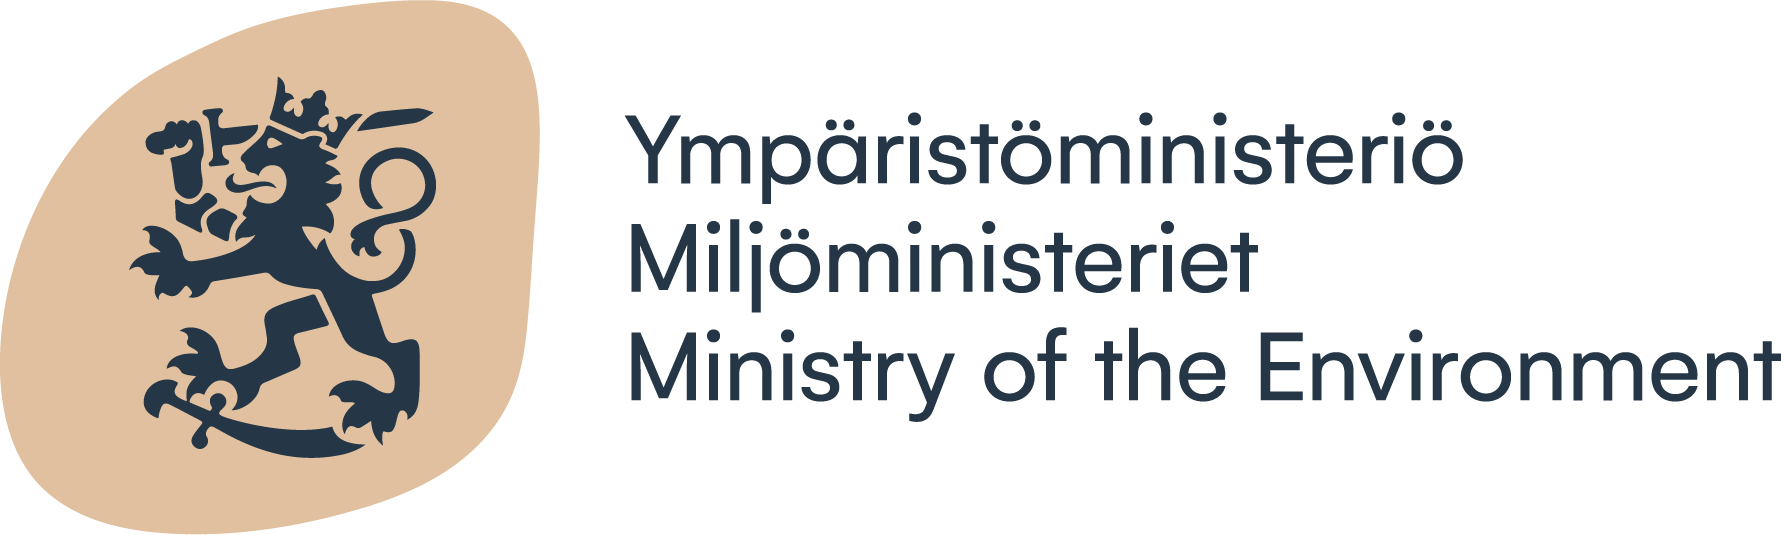 Ympäristöministeriö_logo.png